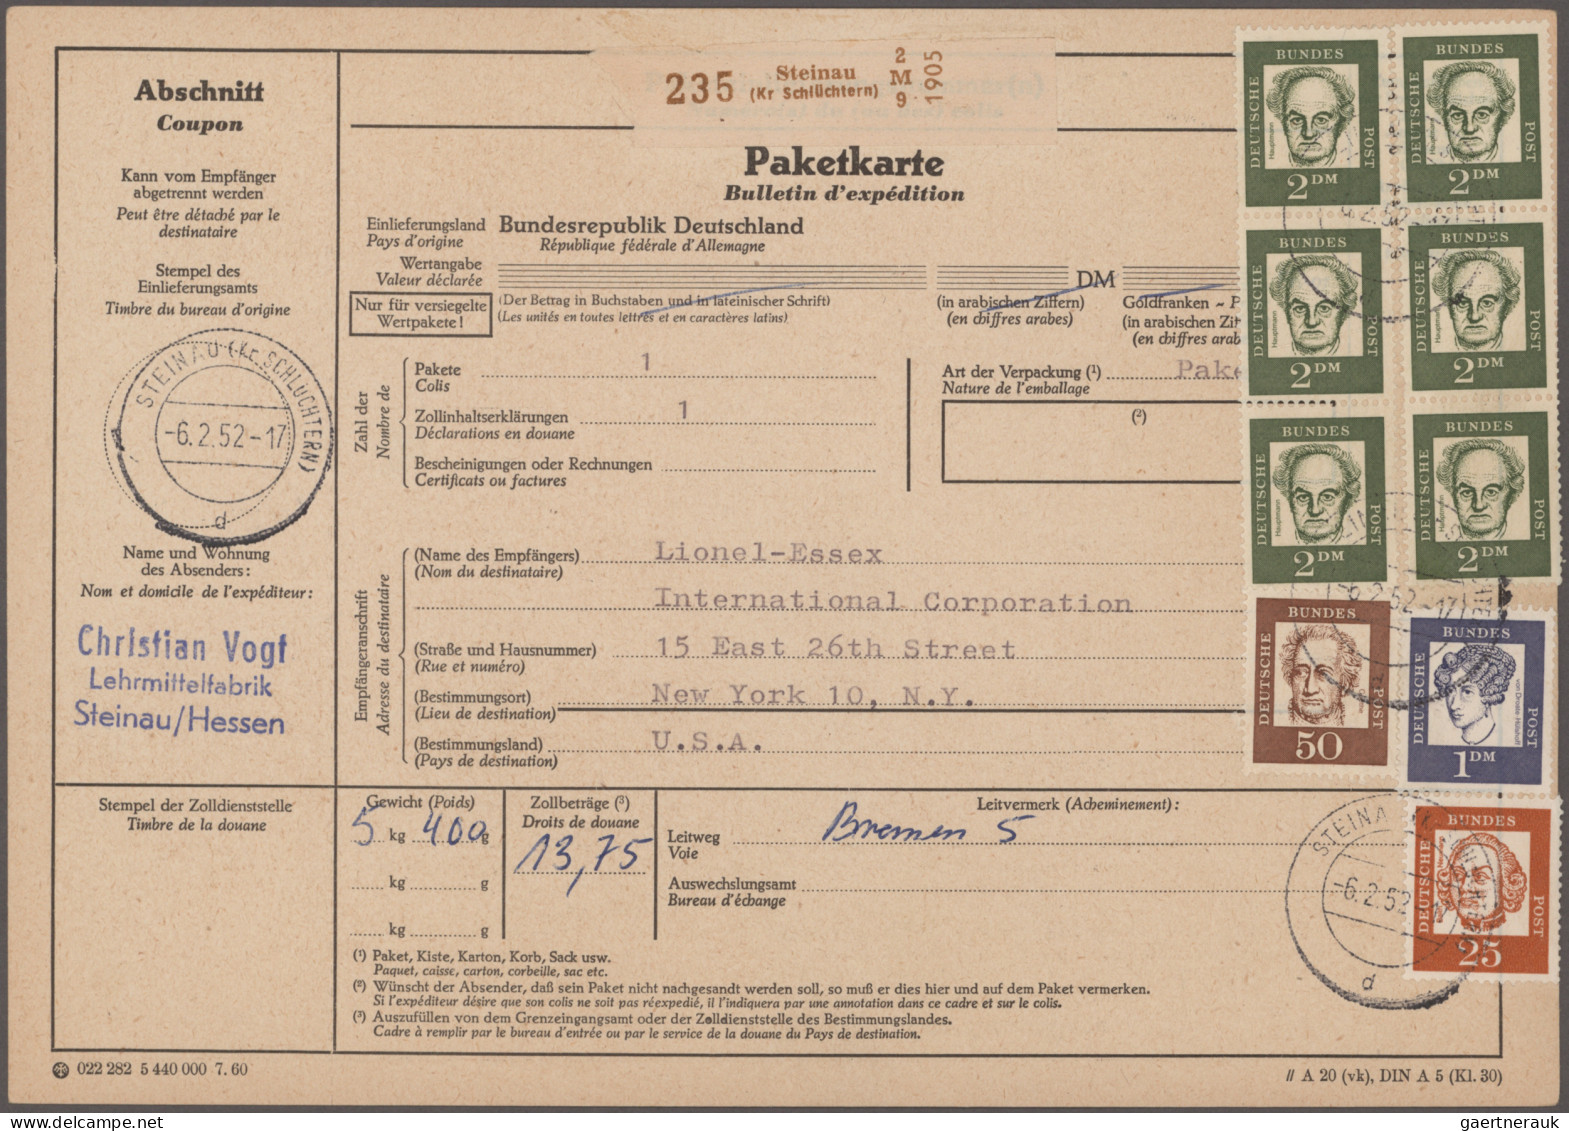 Bundesrepublik Deutschland: 1961/1965, Bedeutende Deutsche, umfangreicher Bestan